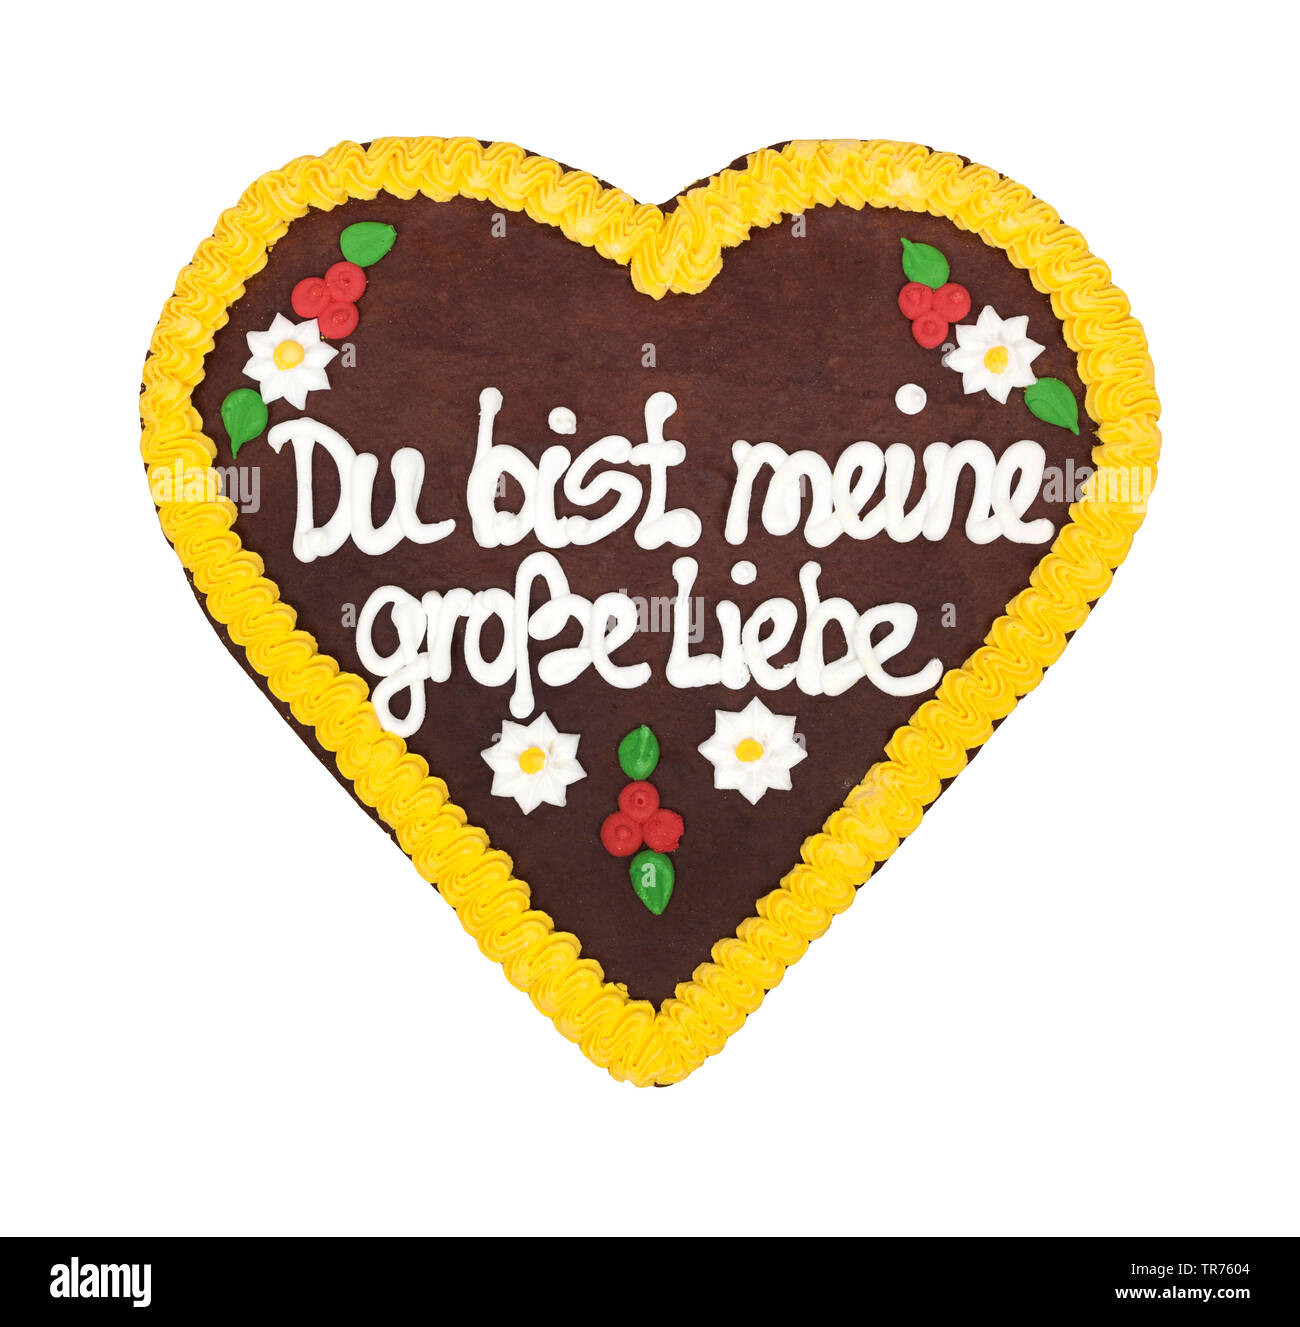 Lebkuchenherz mit der Aufschrift 'Du bist meine grosse Liebe", Deutschland  | Oktoberfest Herzen" Sie sind meine größte Liebe', Deutschland | BLWS  498815.jpg Stockfotografie - Alamy